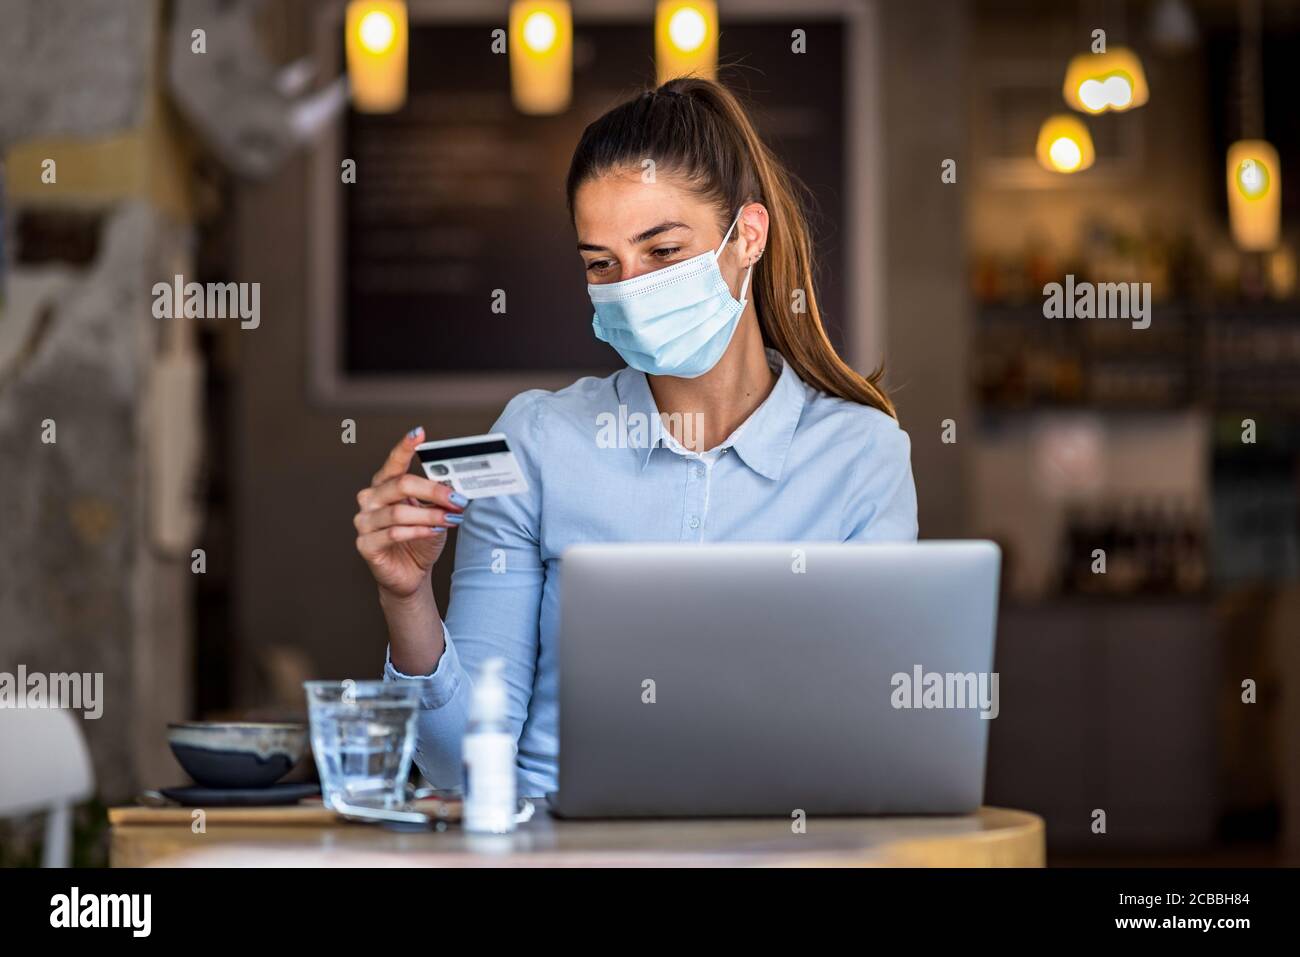 Portrait de jeune femme d'affaires portant un masque tout en faisant des achats en ligne et le paiement par cartes de crédit. Nouveau mode de vie normal pendant la pandémie de Covid-19. Banque D'Images